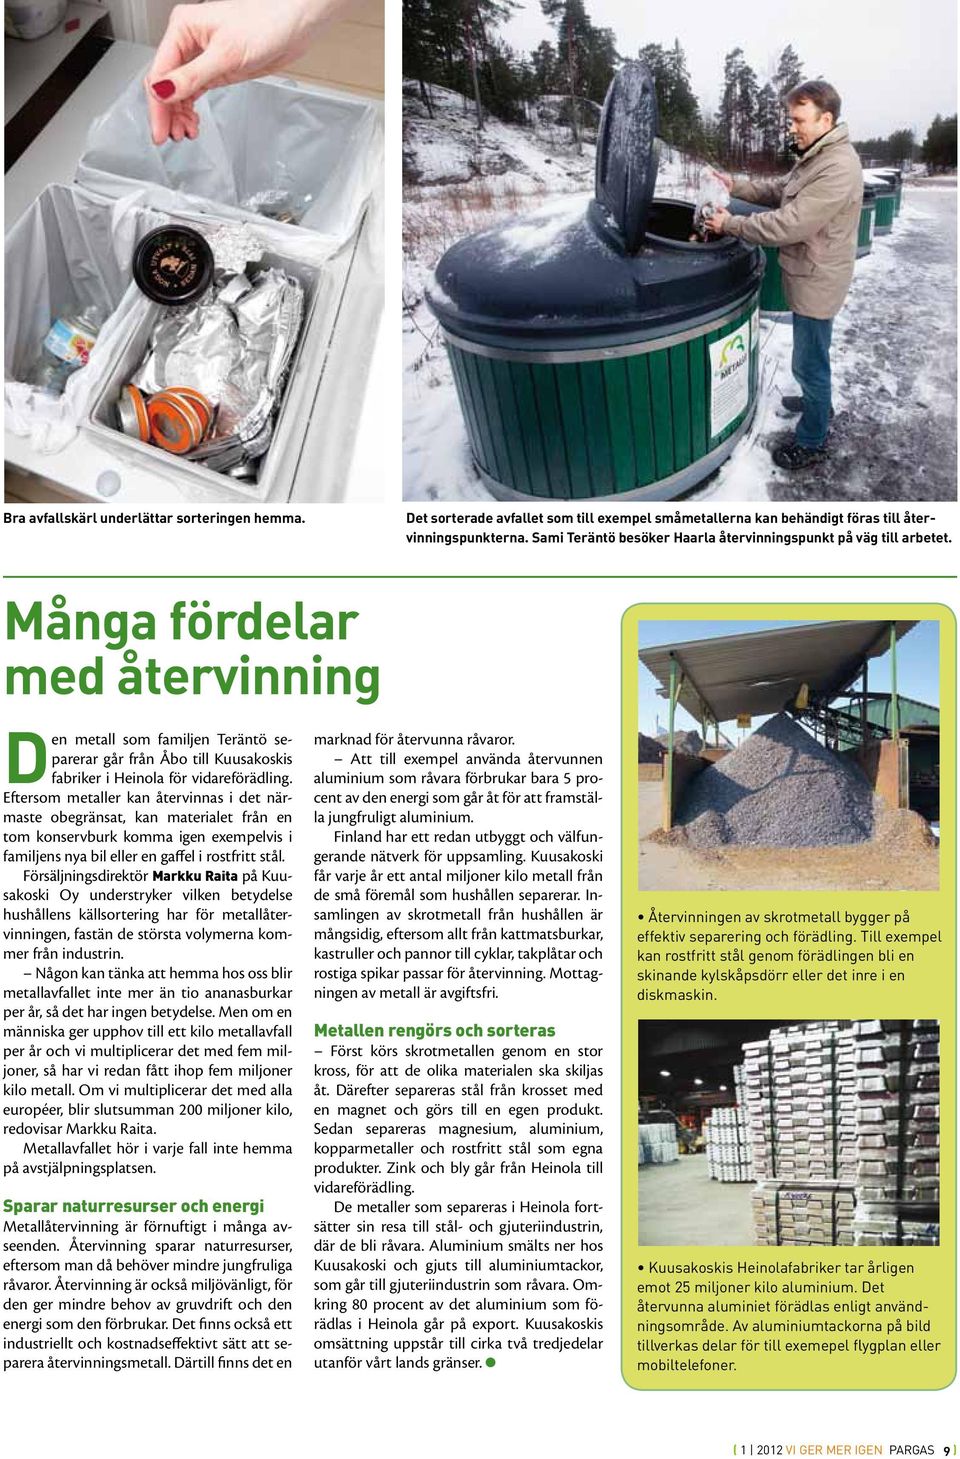 Många fördelar med återvinning Den metall som familjen Teräntö separerar går från Åbo till Kuusakoskis fabriker i Heinola för vidareförädling.